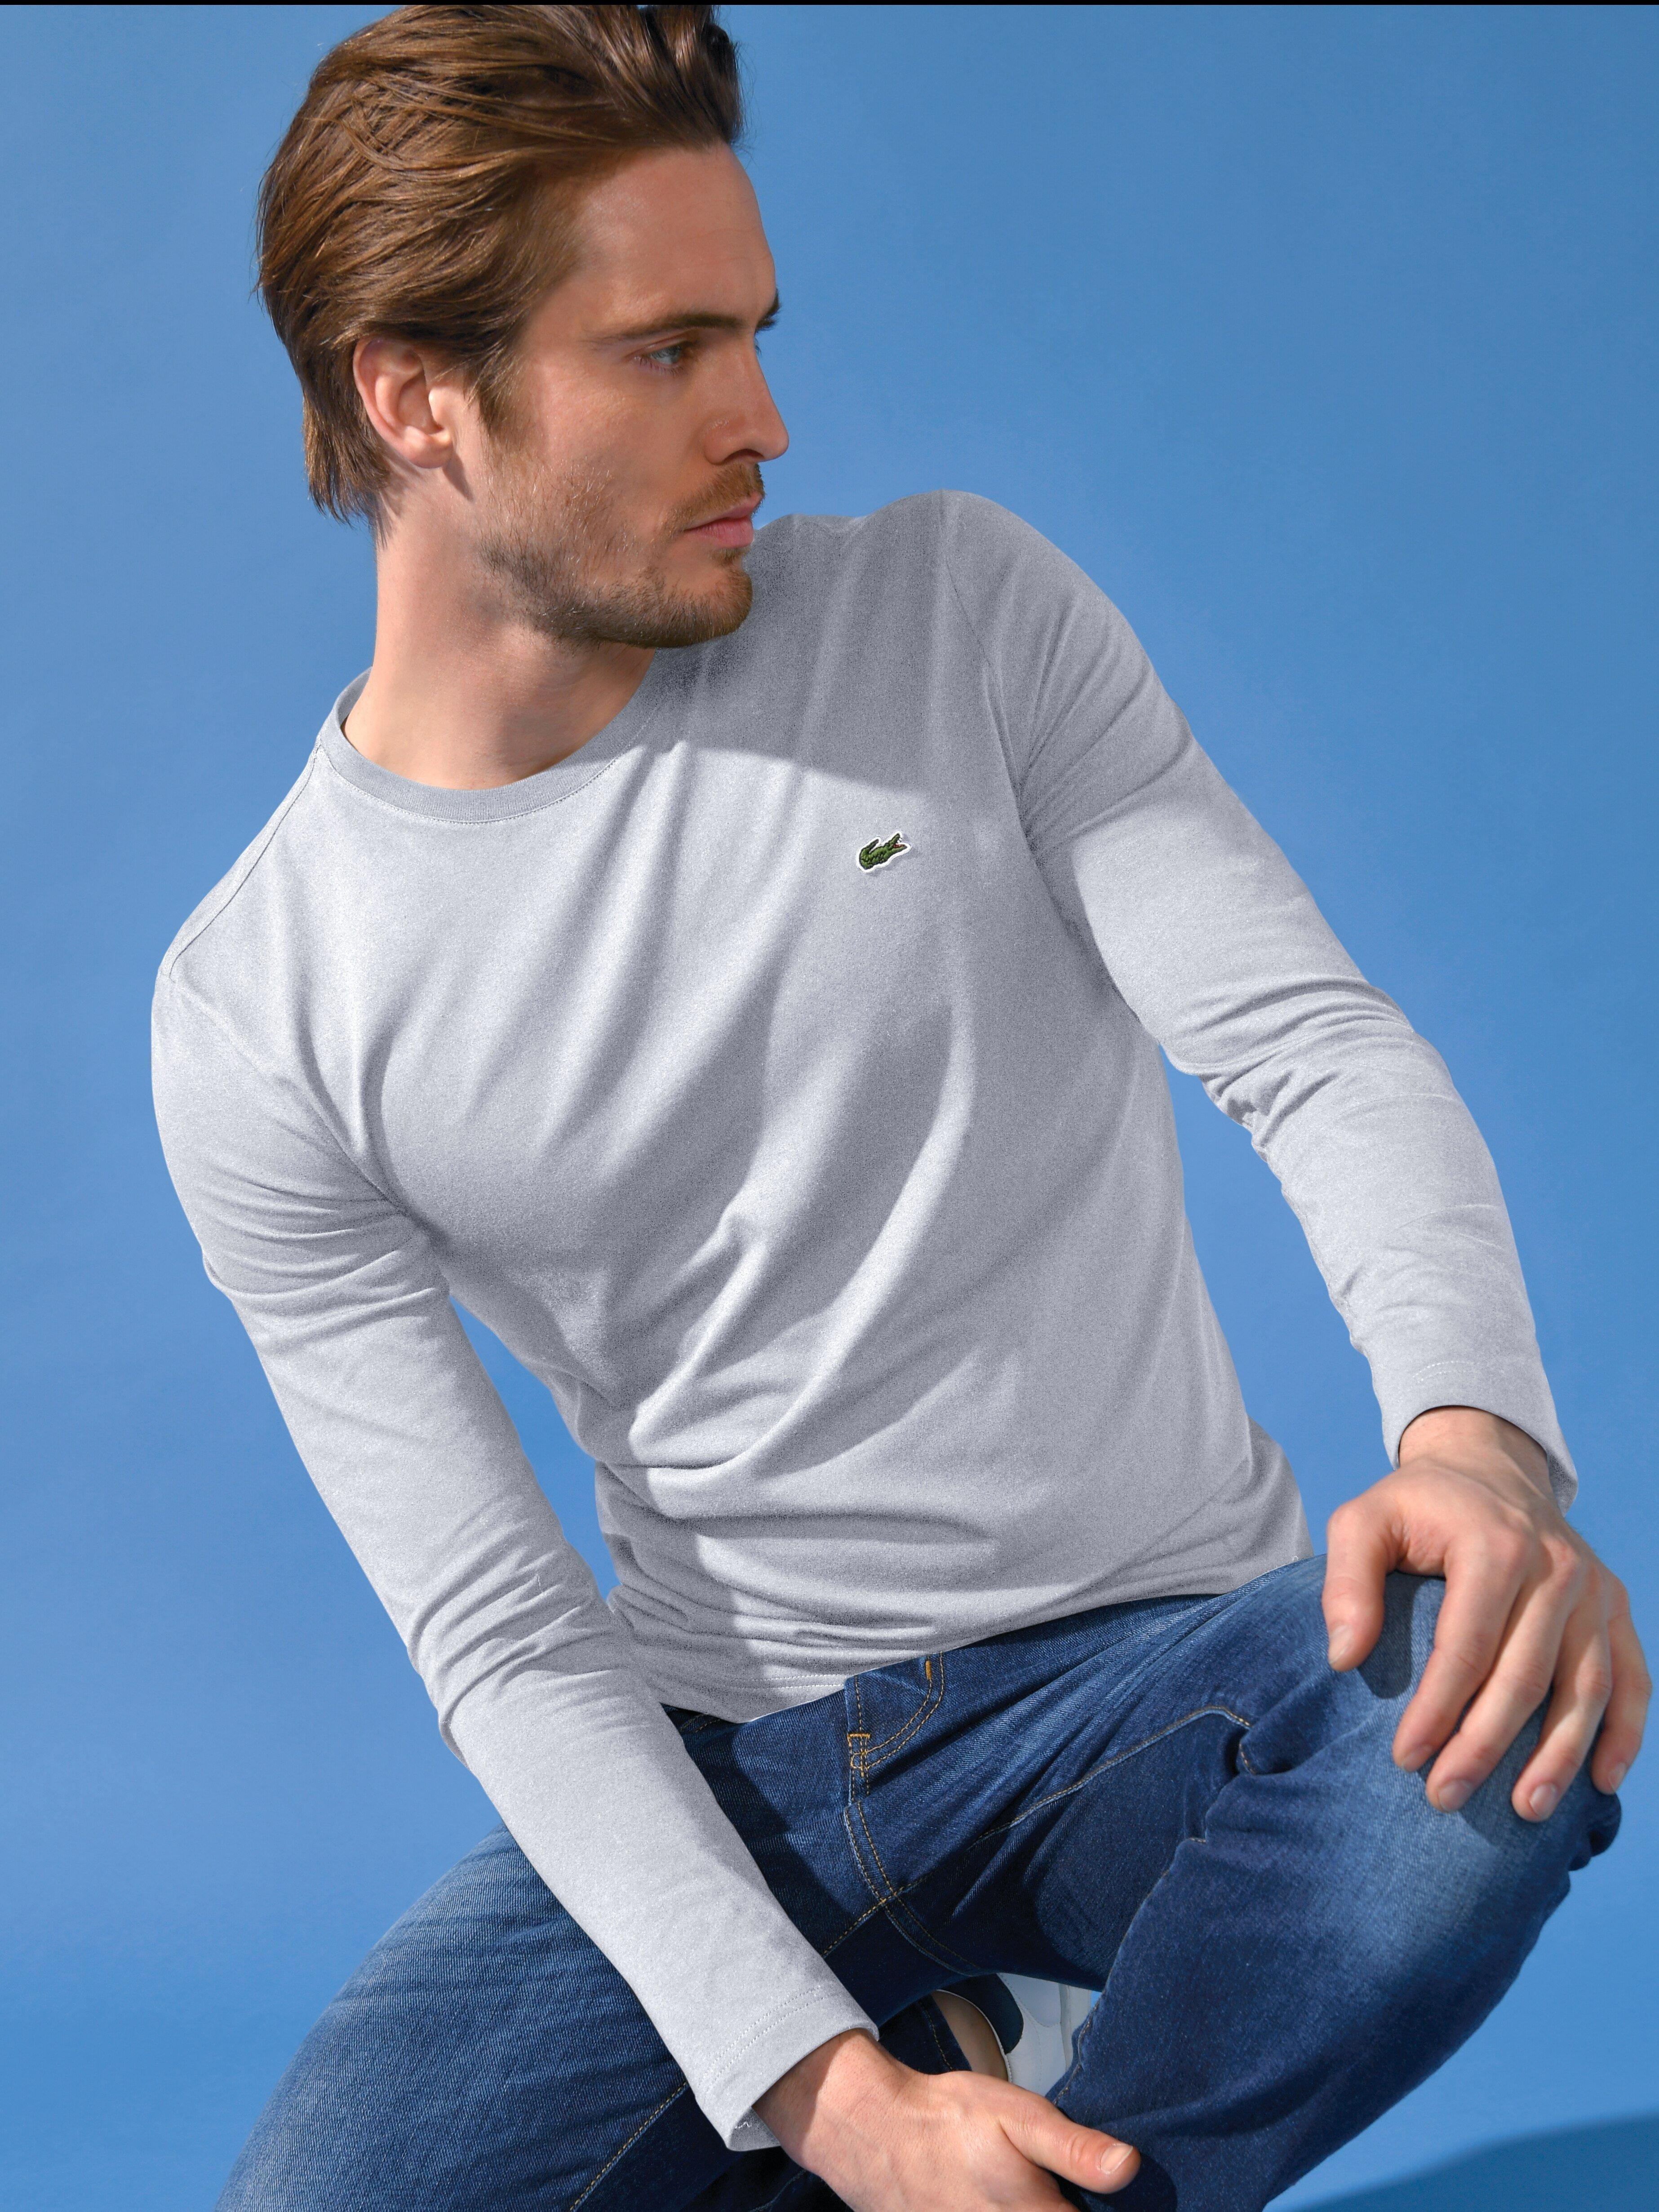 Lacoste - Rundhals-Shirt mit 1/1 Arm